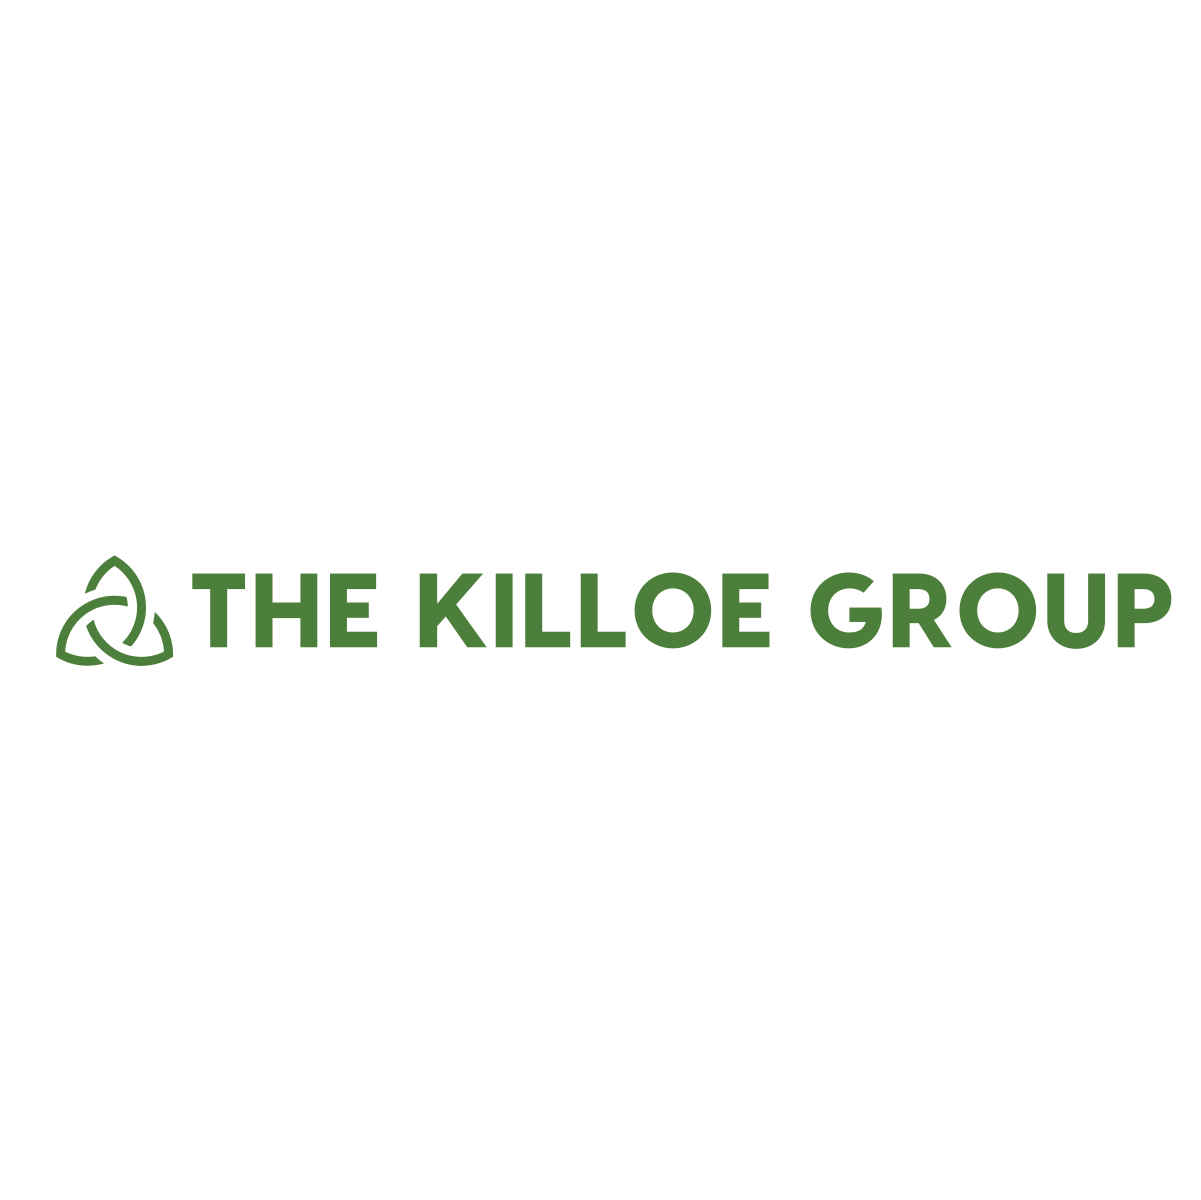 The Killoe Group logo